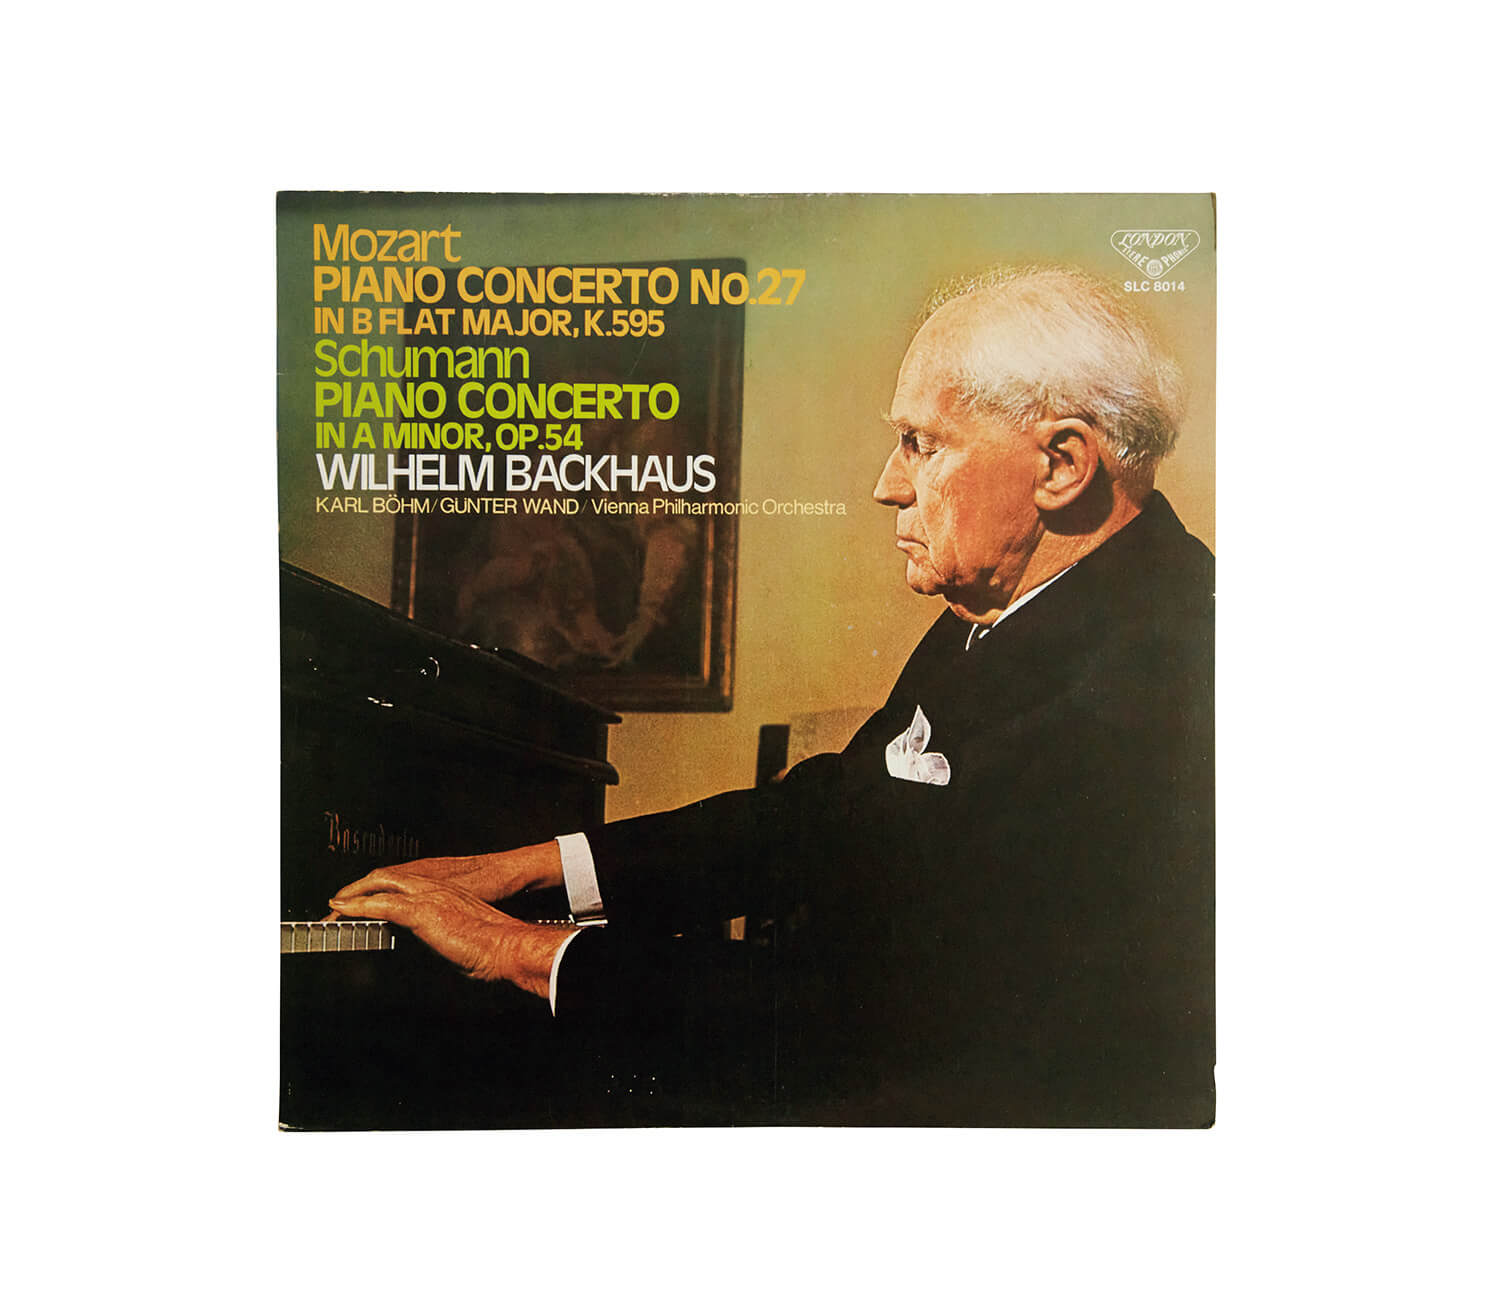 ヴィルヘルム・バックハウが演奏したシューマン「ピアノ協奏曲 イ短調」レコードジャケット